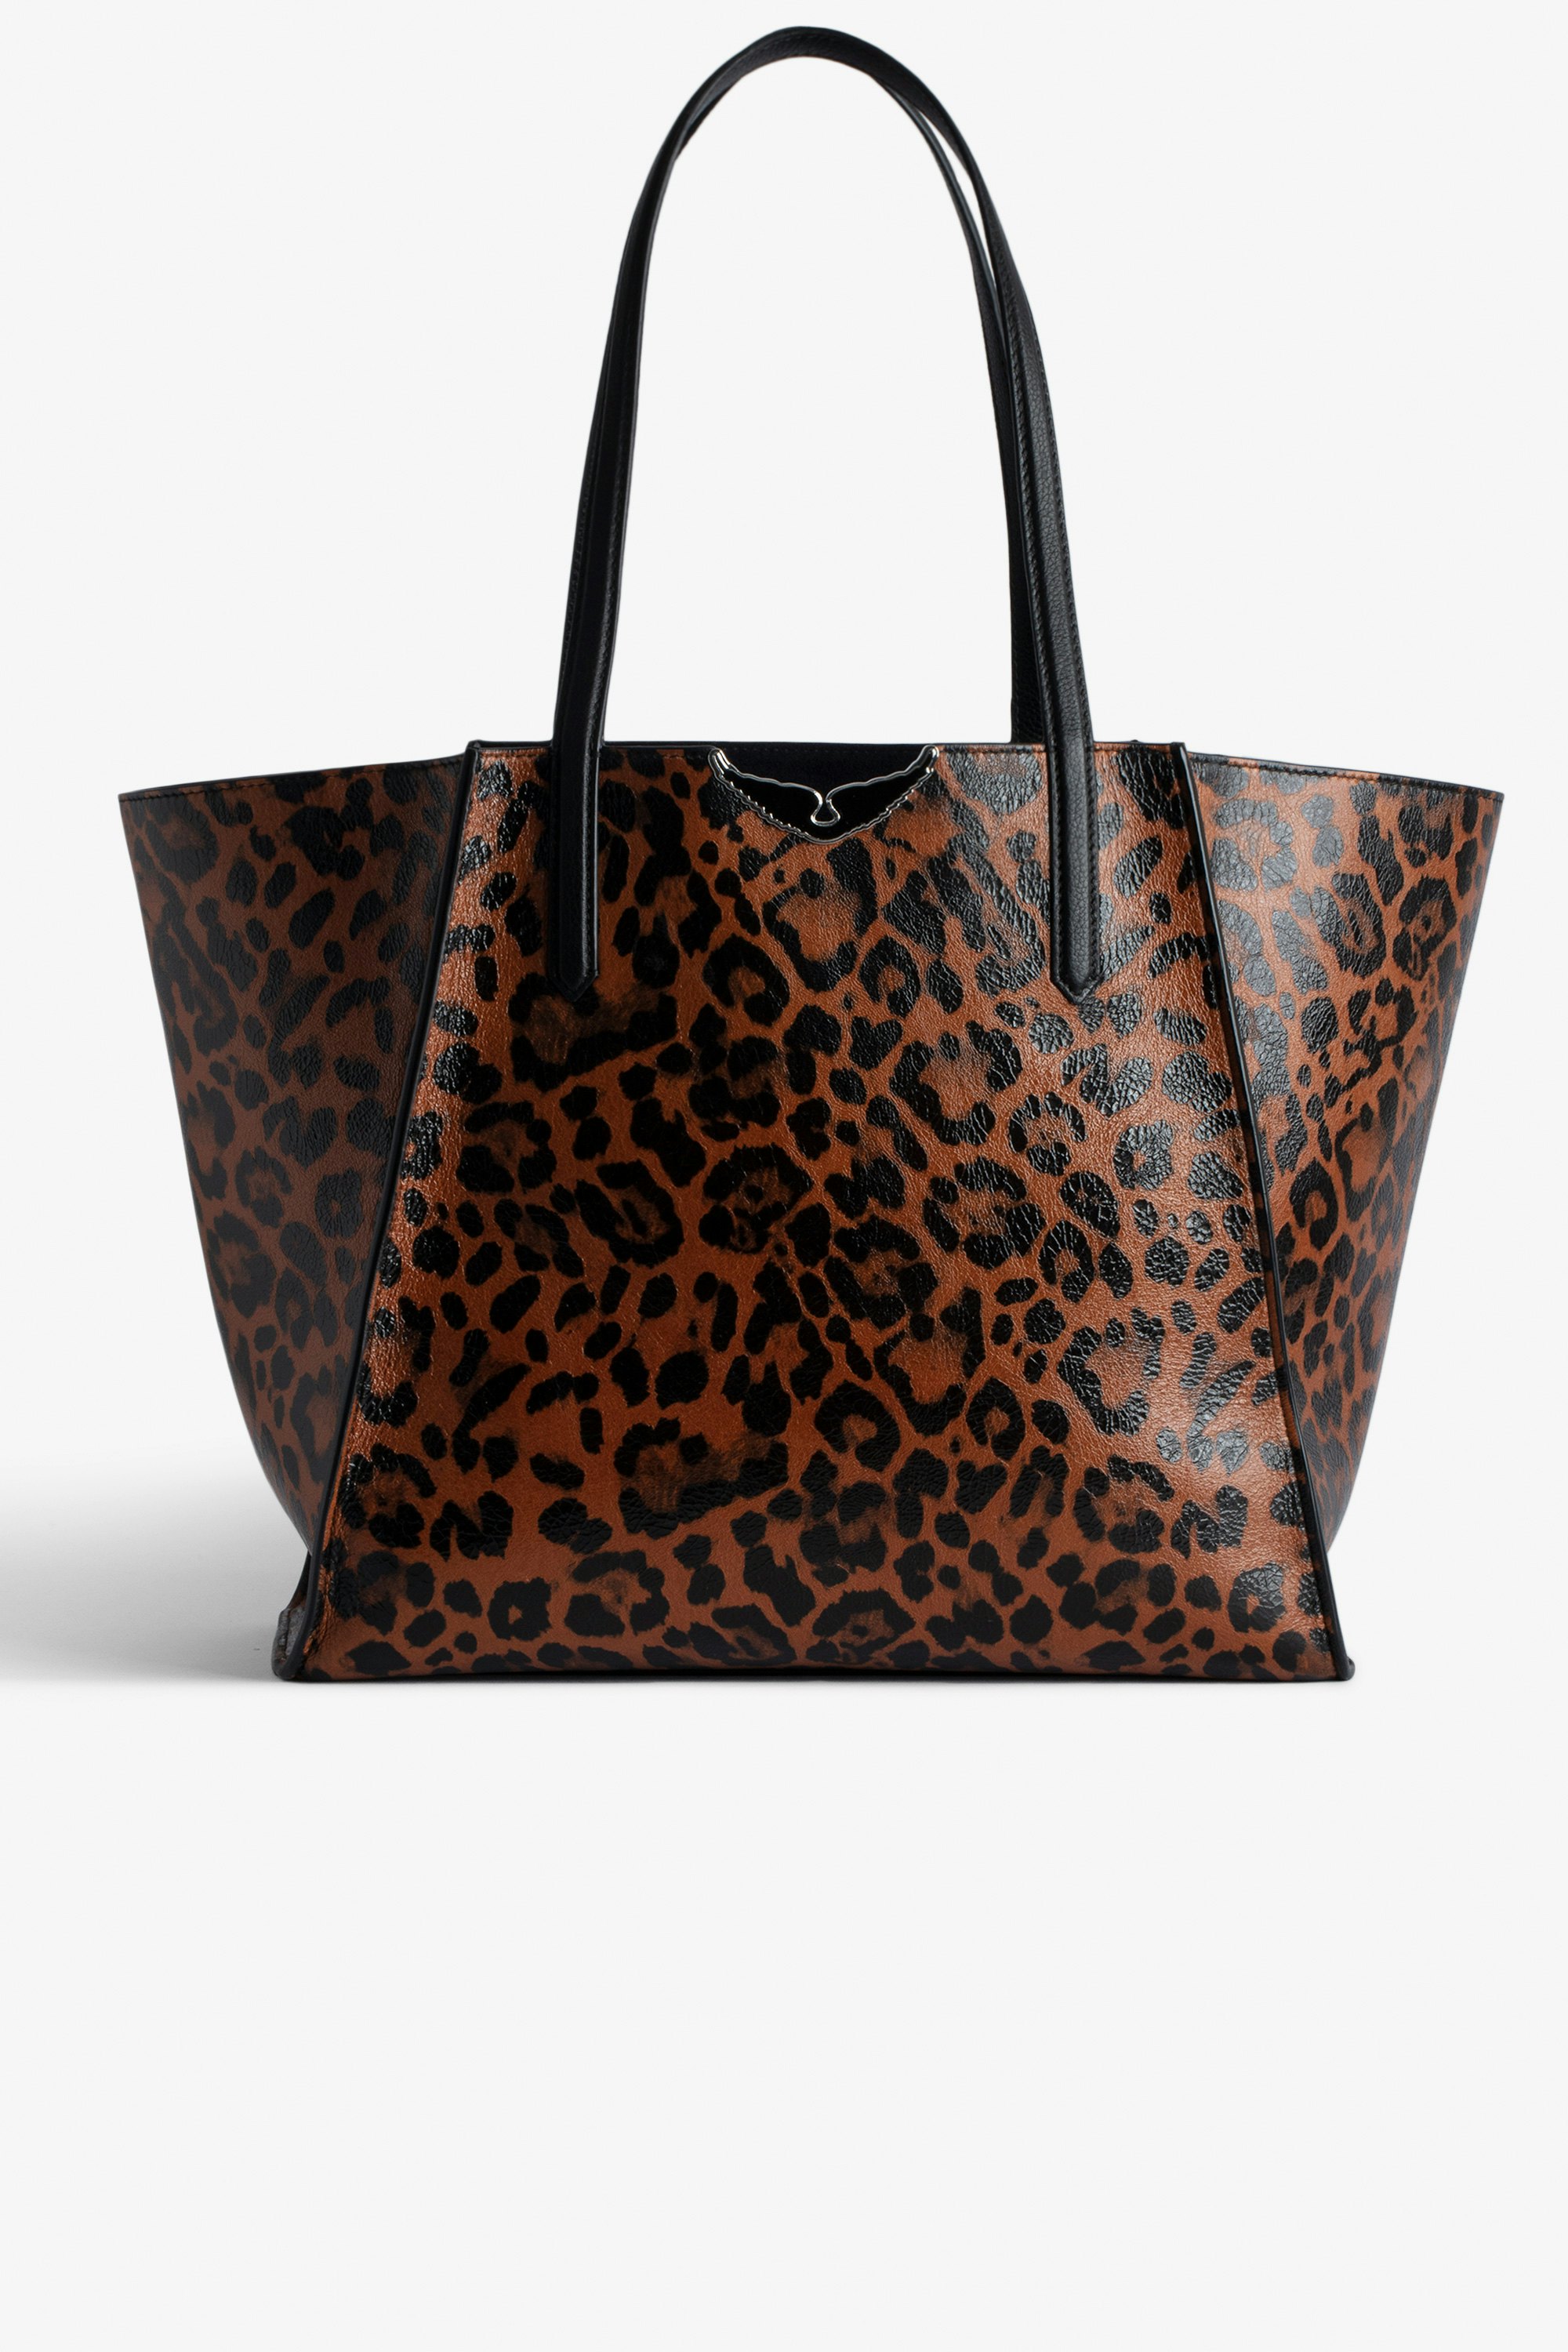 Tasche Le Borderline Leopard - Wendbare Tasche aus braunem glänzendem Leder mit Leoparden-Print und Henkel und Flügeln aus Metall für Damen.